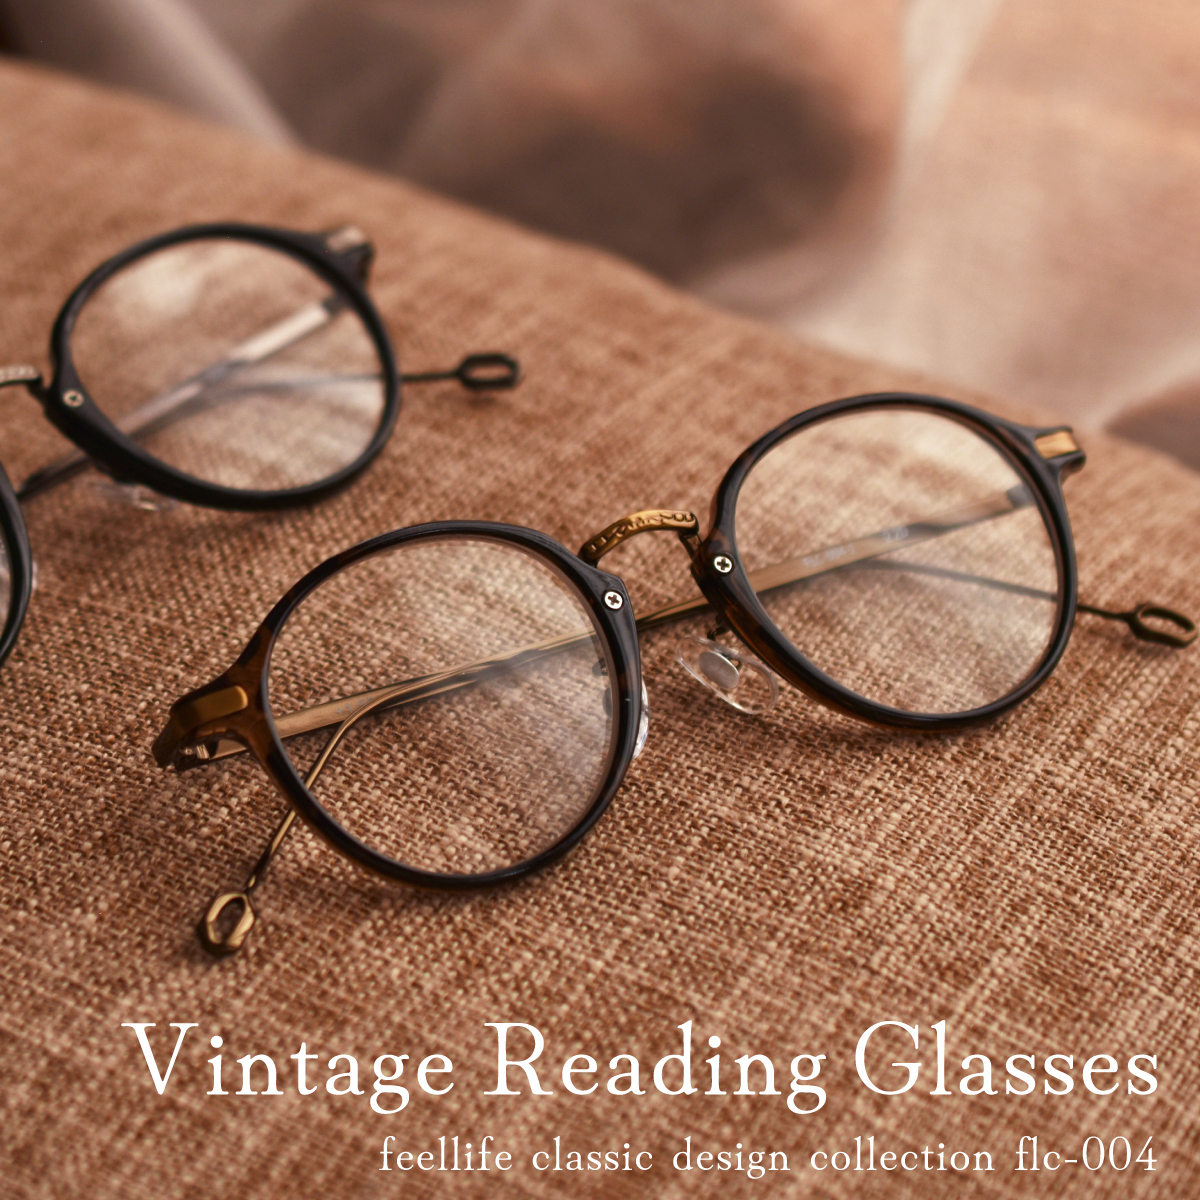 老眼鏡 おしゃれ リーディンググラス レディース メンズ 可愛い シニアグラス ヴィンテージ風 クラシック 敬老の日 贈り物  :flc-004:オプティックストアグラスガーデン 通販 